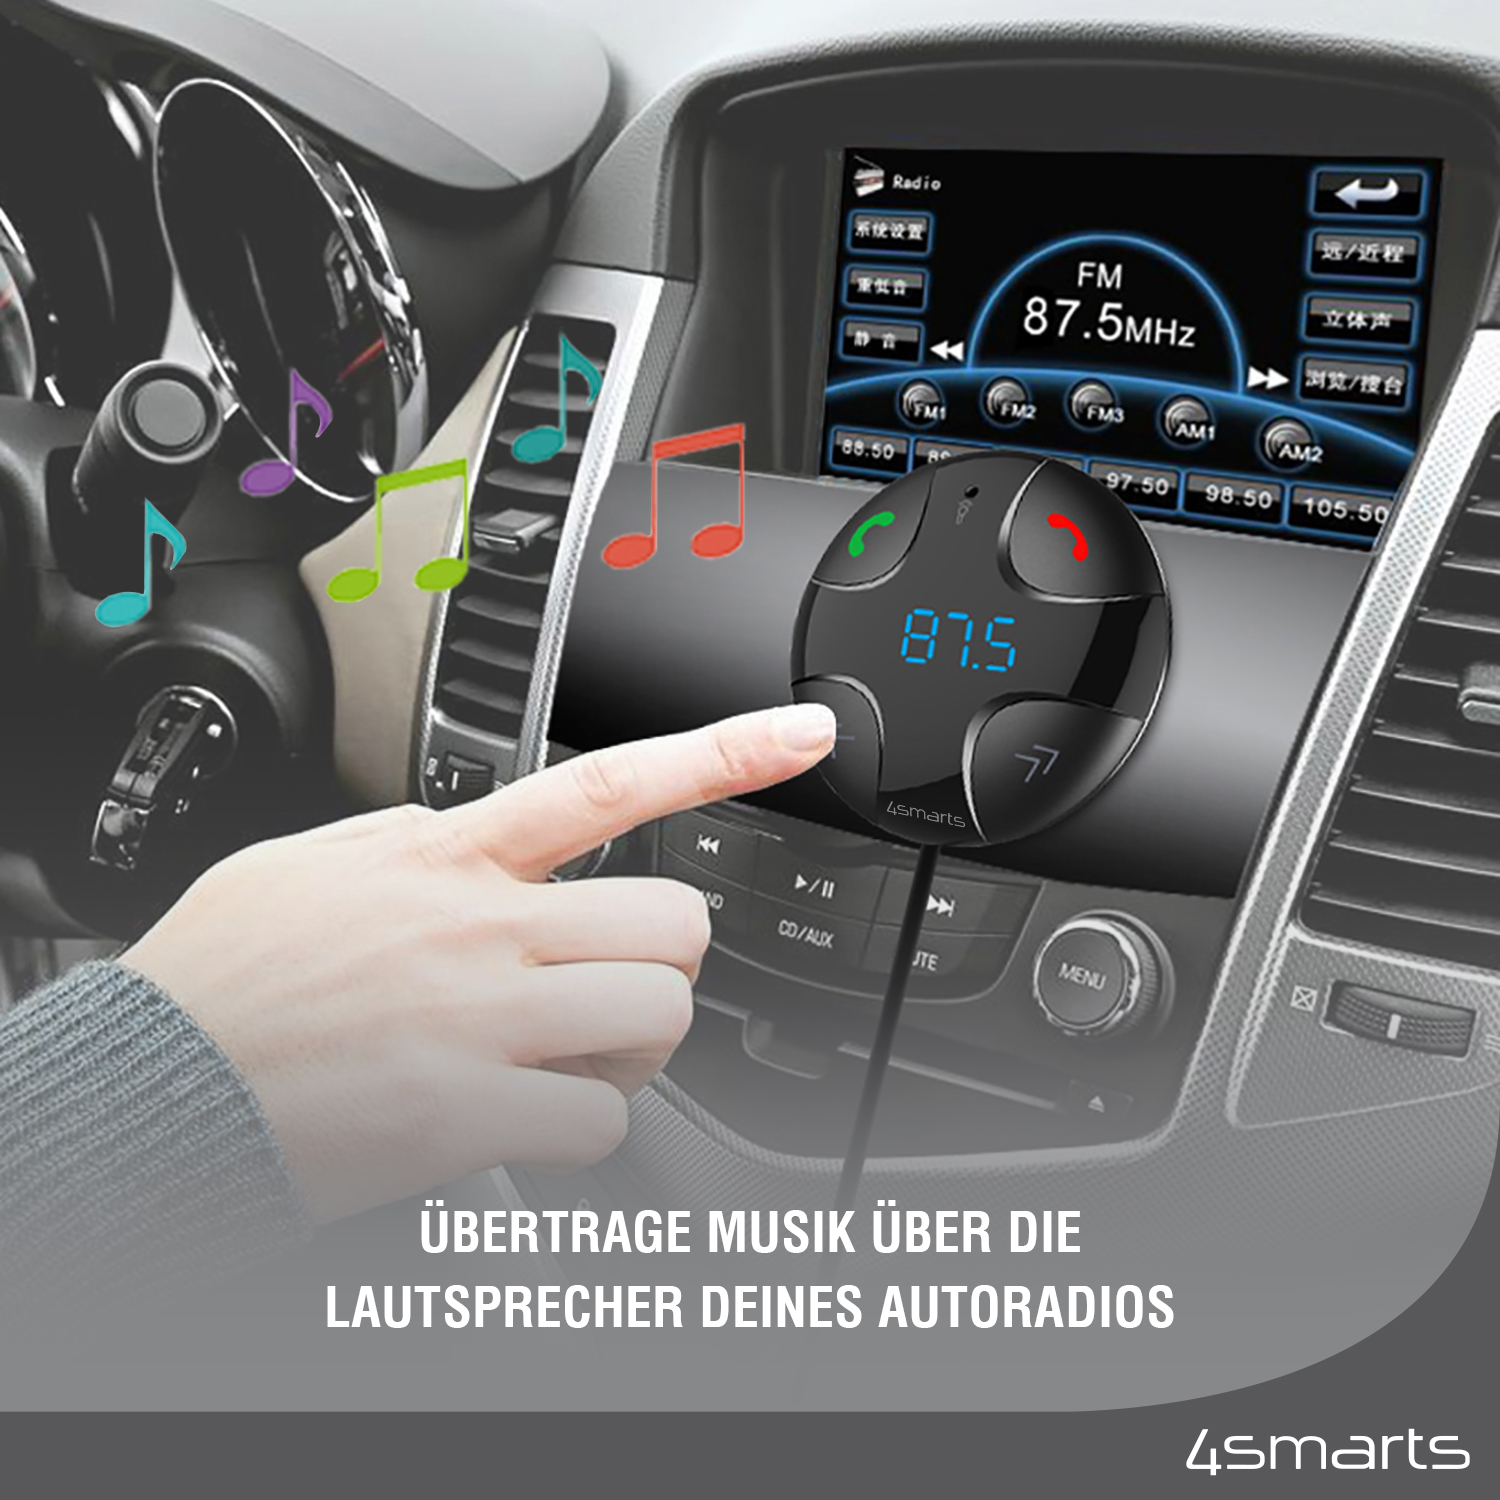 Mit dem 4smarts Bluetooth FM Transmitter DashRemote mit Multimedia-In, Freisprechfunktion und Kfz-Ladegerät kannst du deine Musik ganz einfach über die Lautsprecher deines Autoradios abspielen.